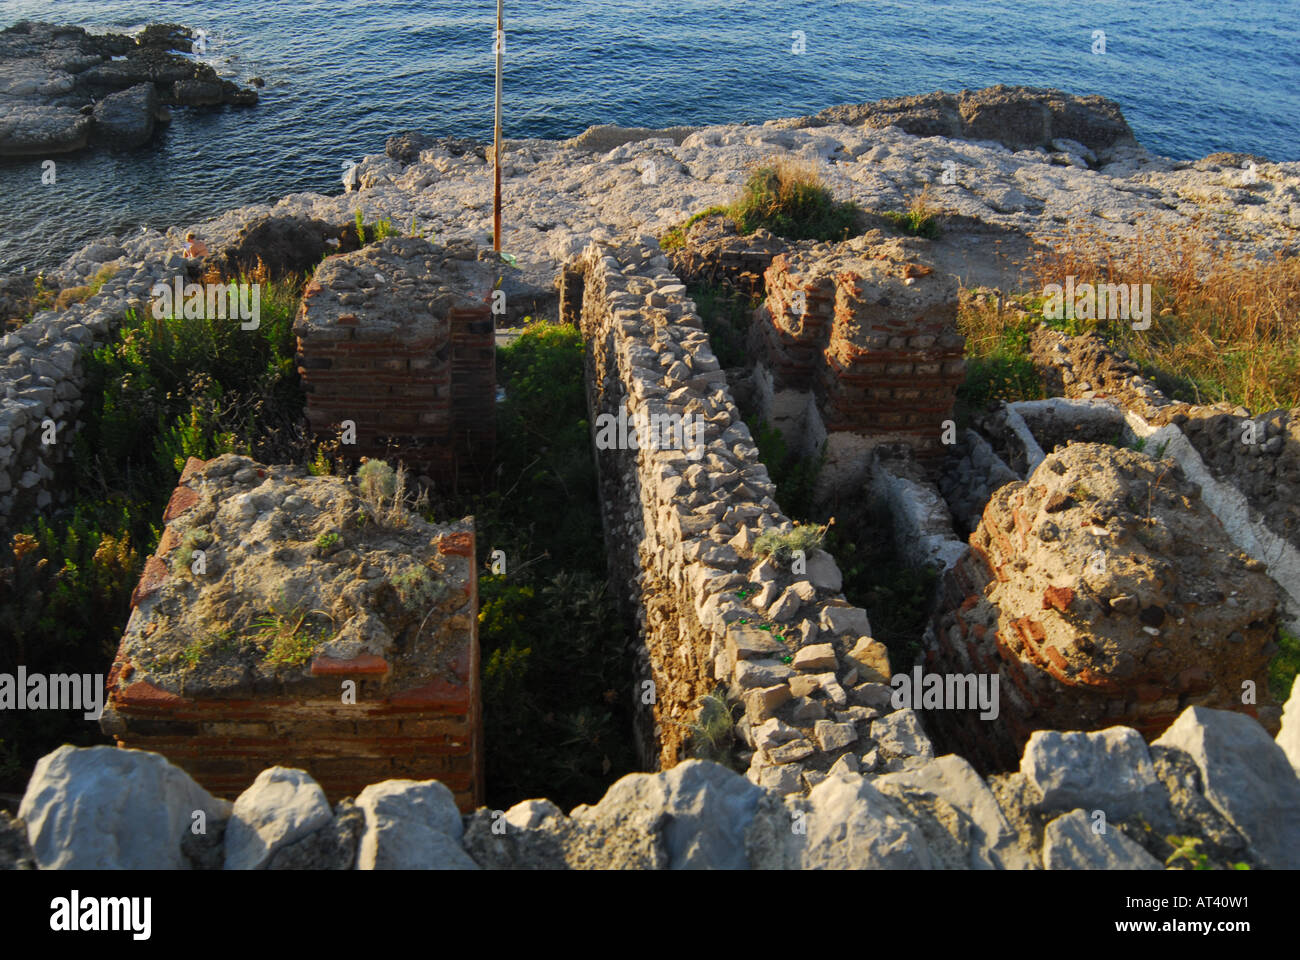 Ruins of a Roman villa on Capo di Sorrento Stock Photo - Alamy